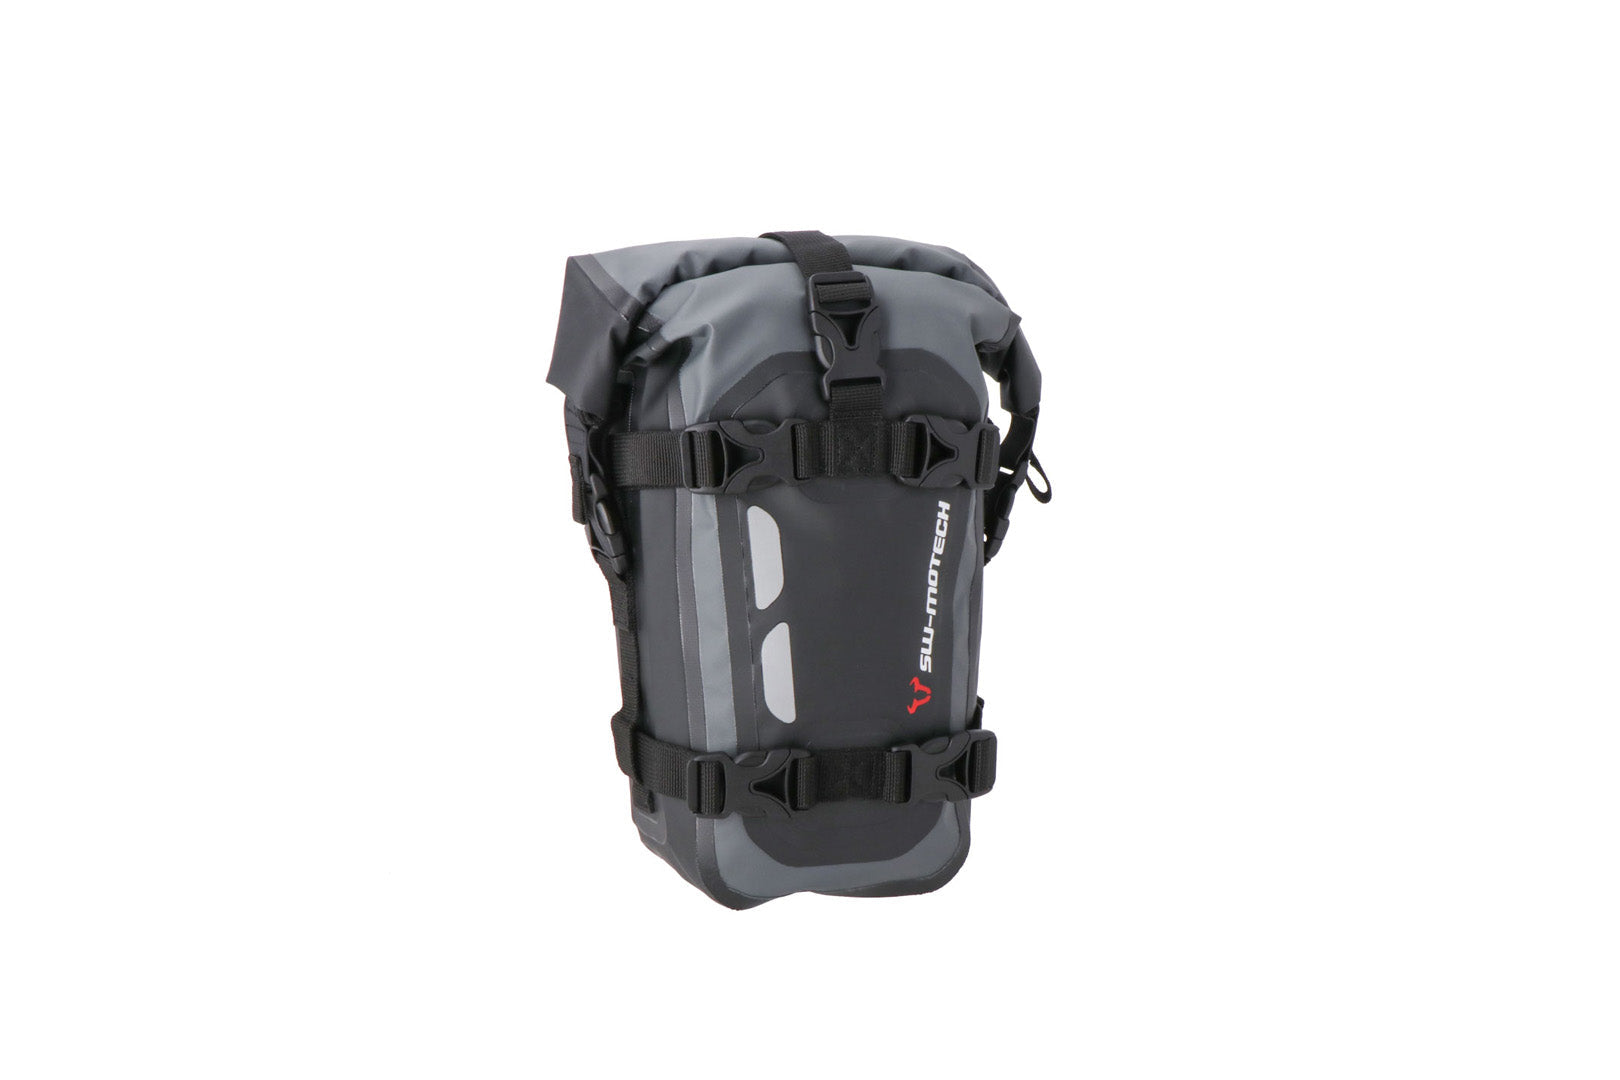 Drybag 80 tail bag Waterproof Grey/black 8 litre